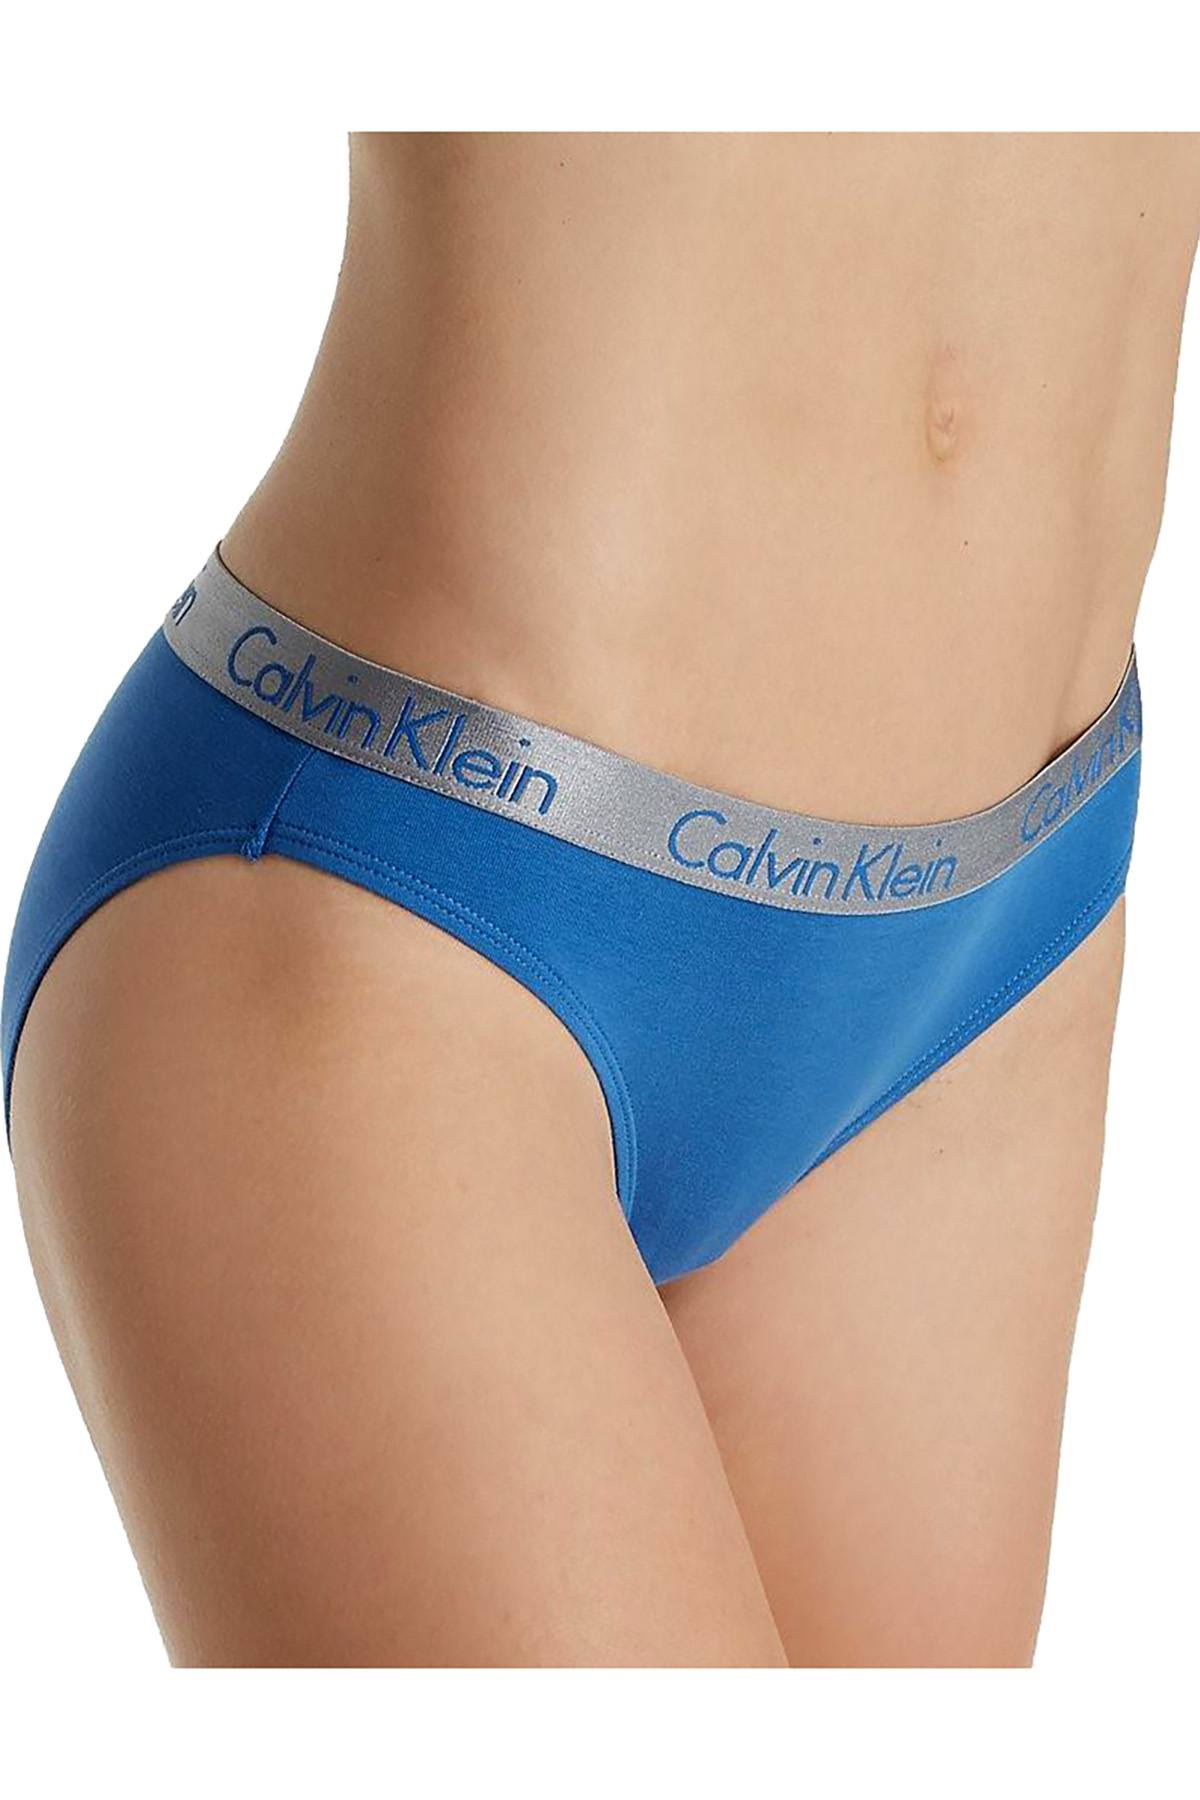 Calvin Klein Commodore-Blue Radiant Cotton Bikini